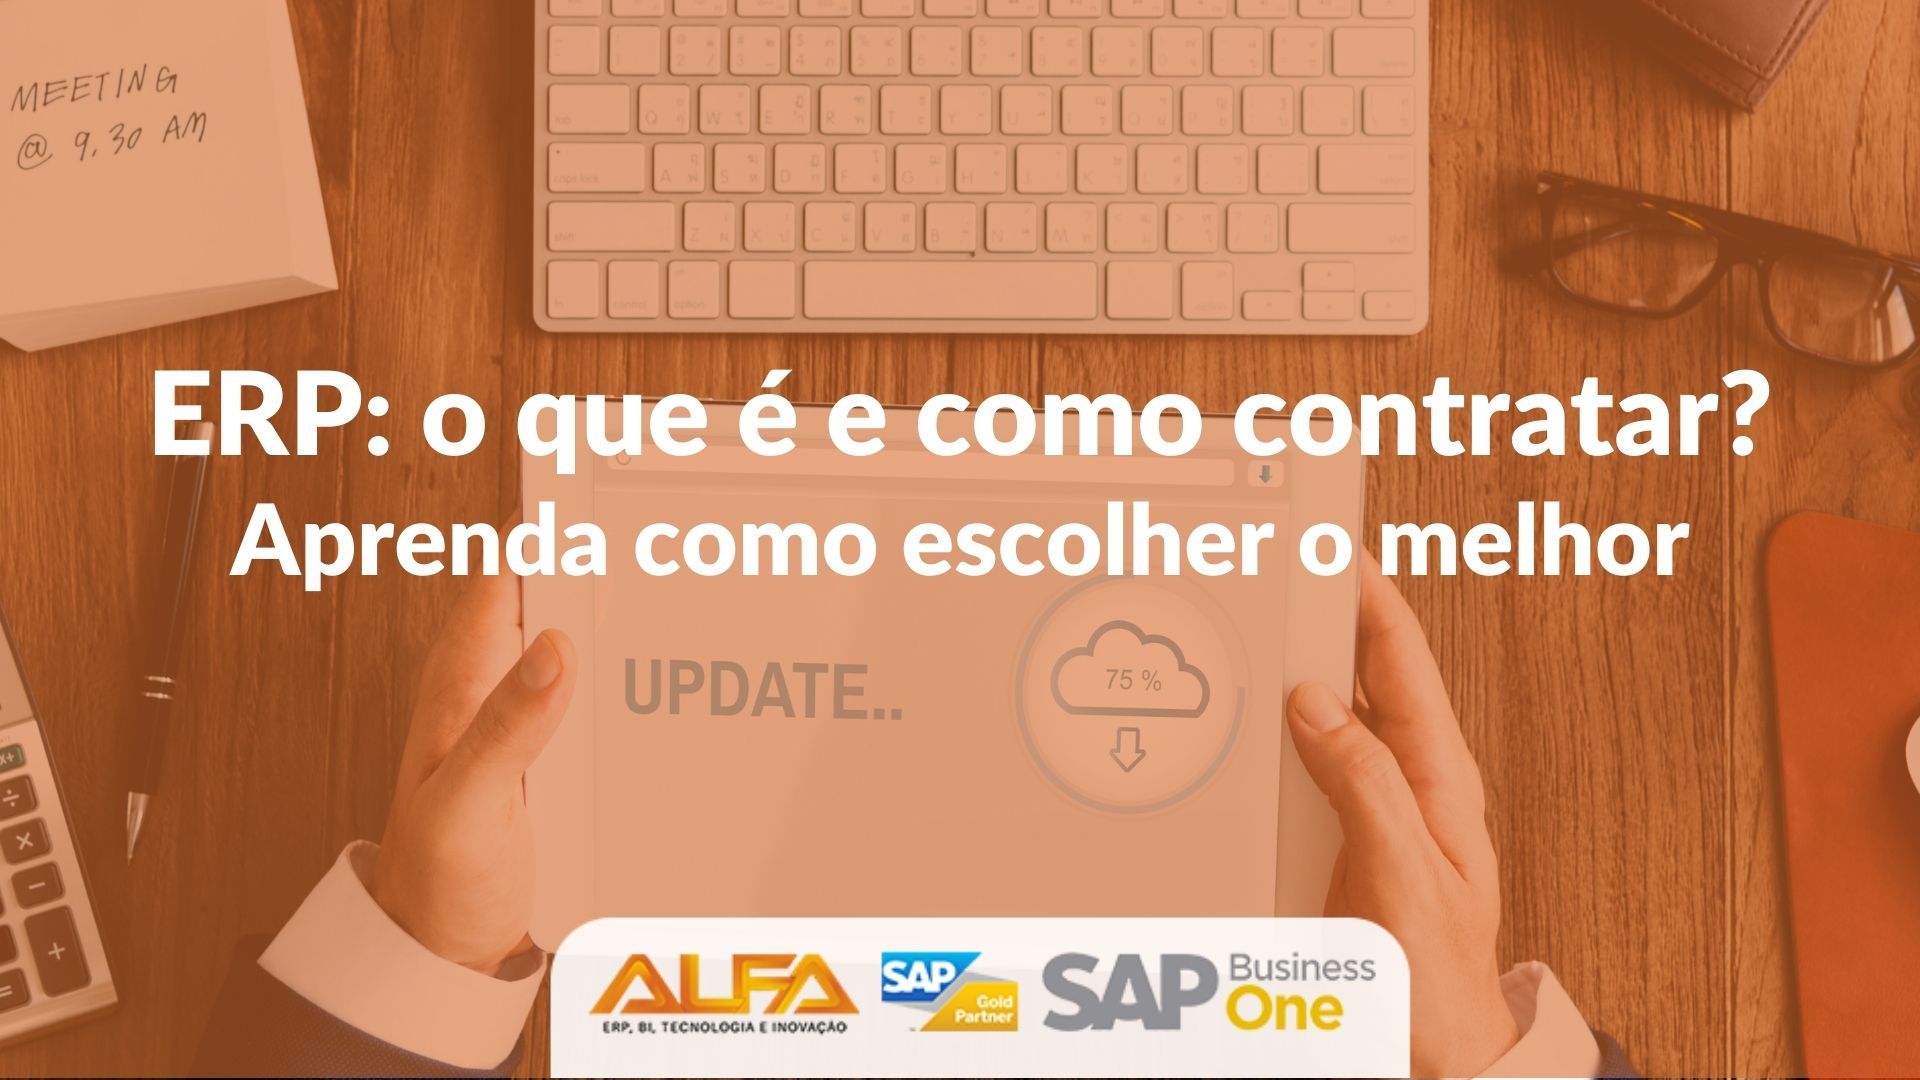 SAP Business One 10.0: conheça as novidades da nova versão SAP Business One 10.0: conheça as novidades da nova versão SAP Business One 10.0: conheça as novidades da nova versão